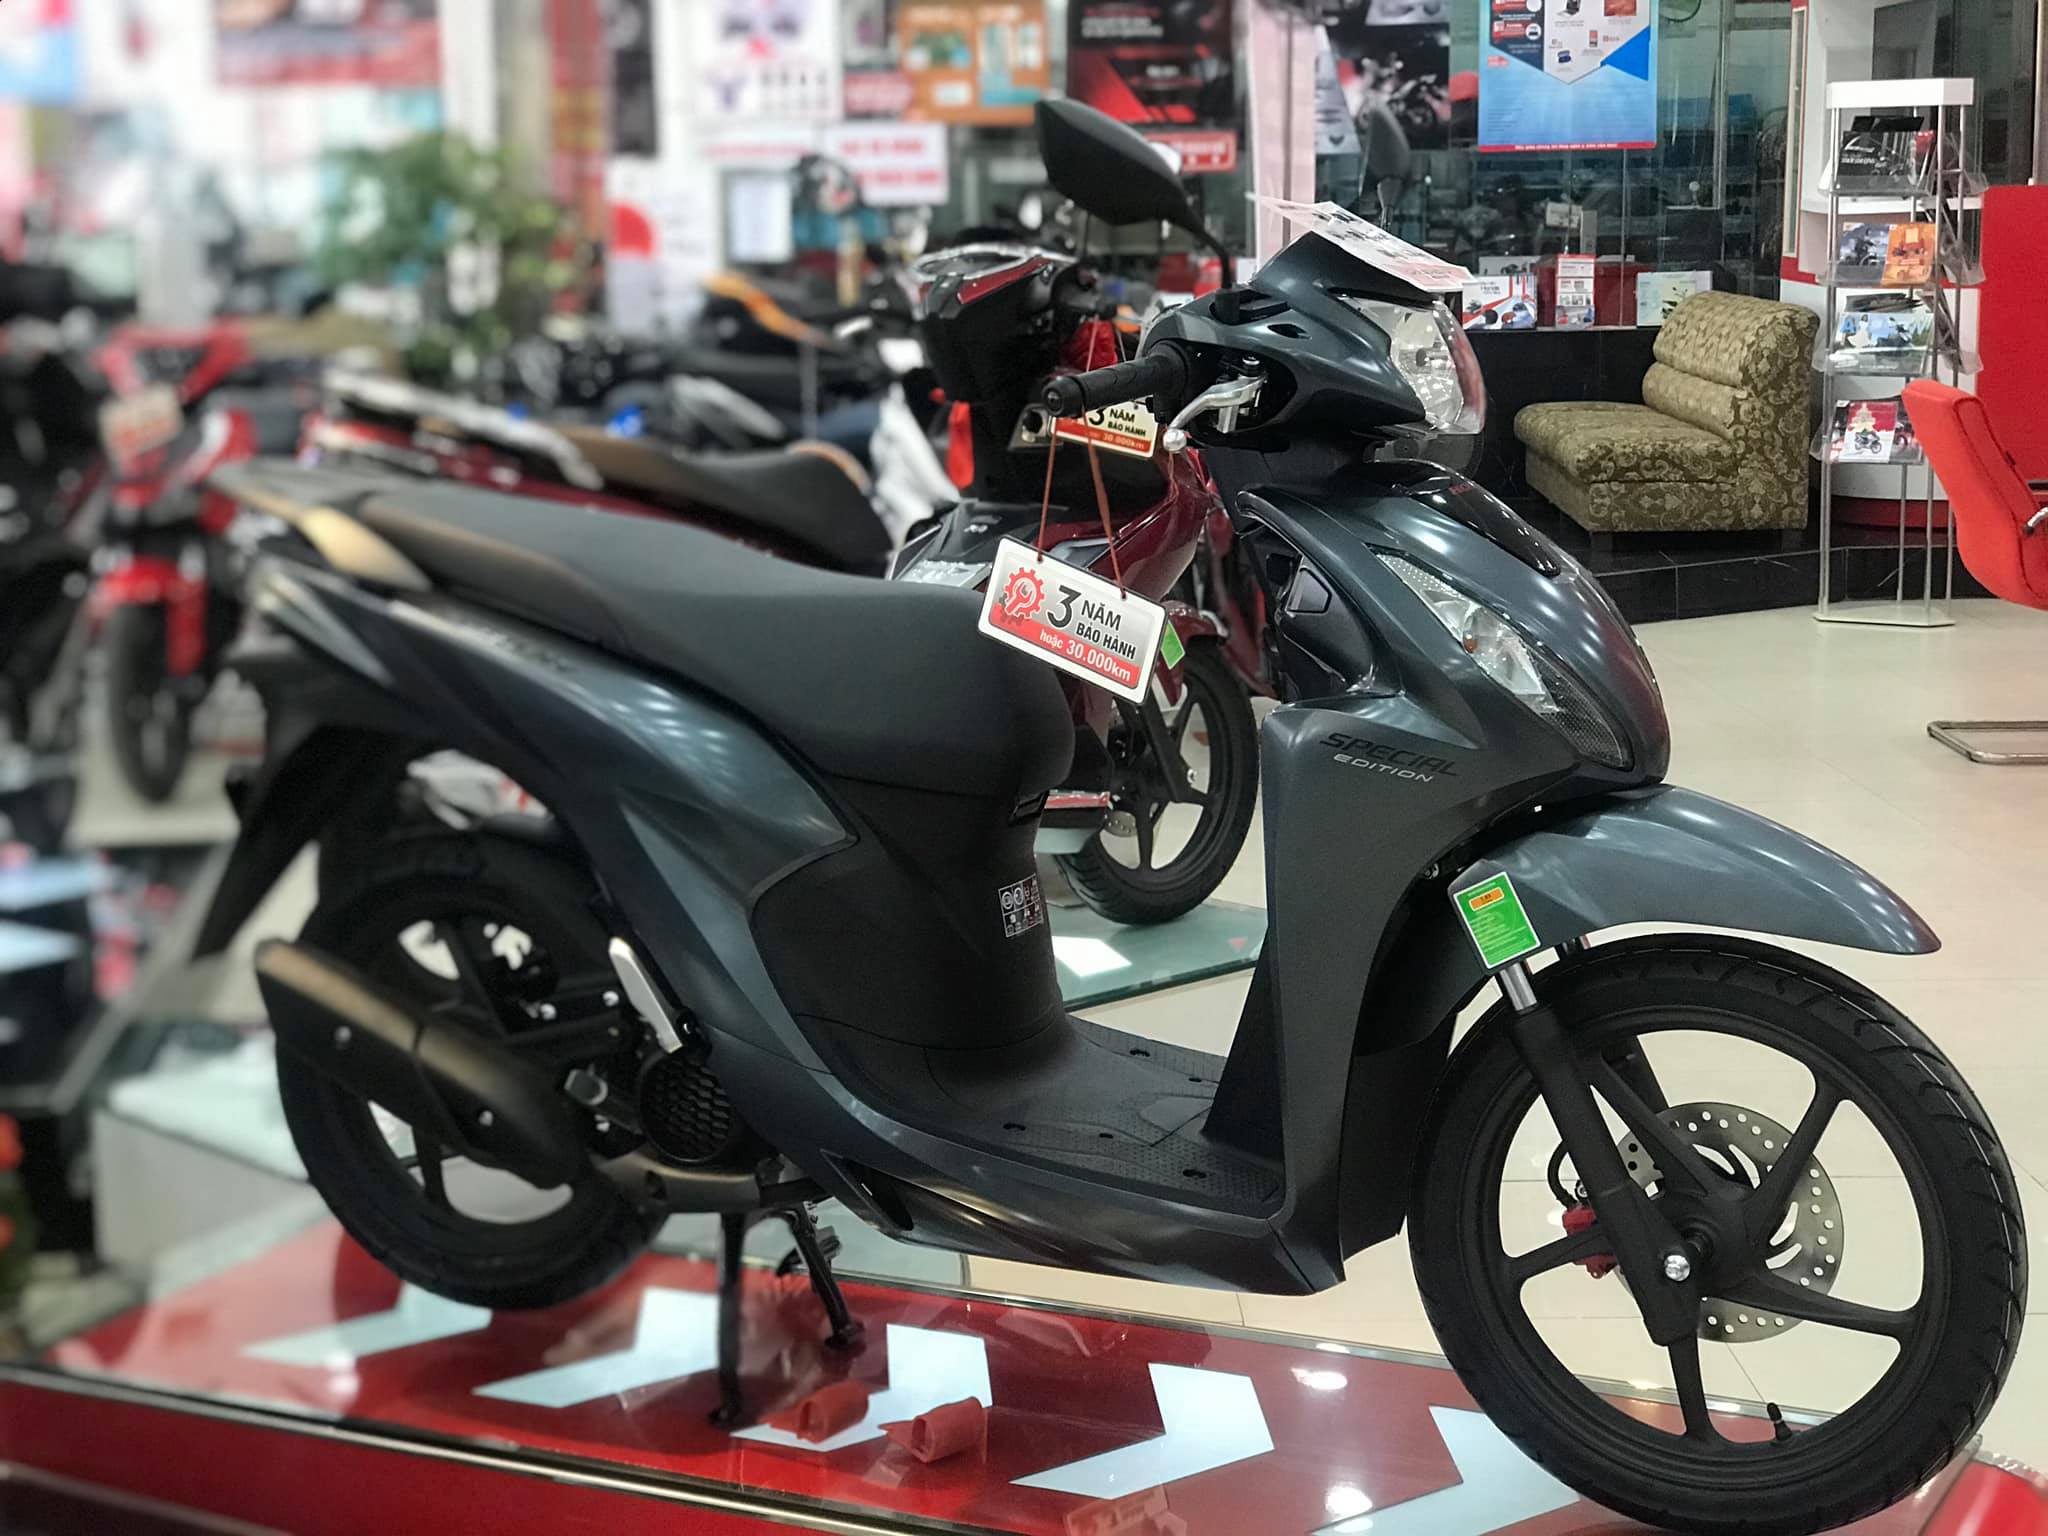 Honda Vision đang thống lĩnh thị trường xe máy Việt cứ ra đường là gặp  Vision  CafeAutoVn